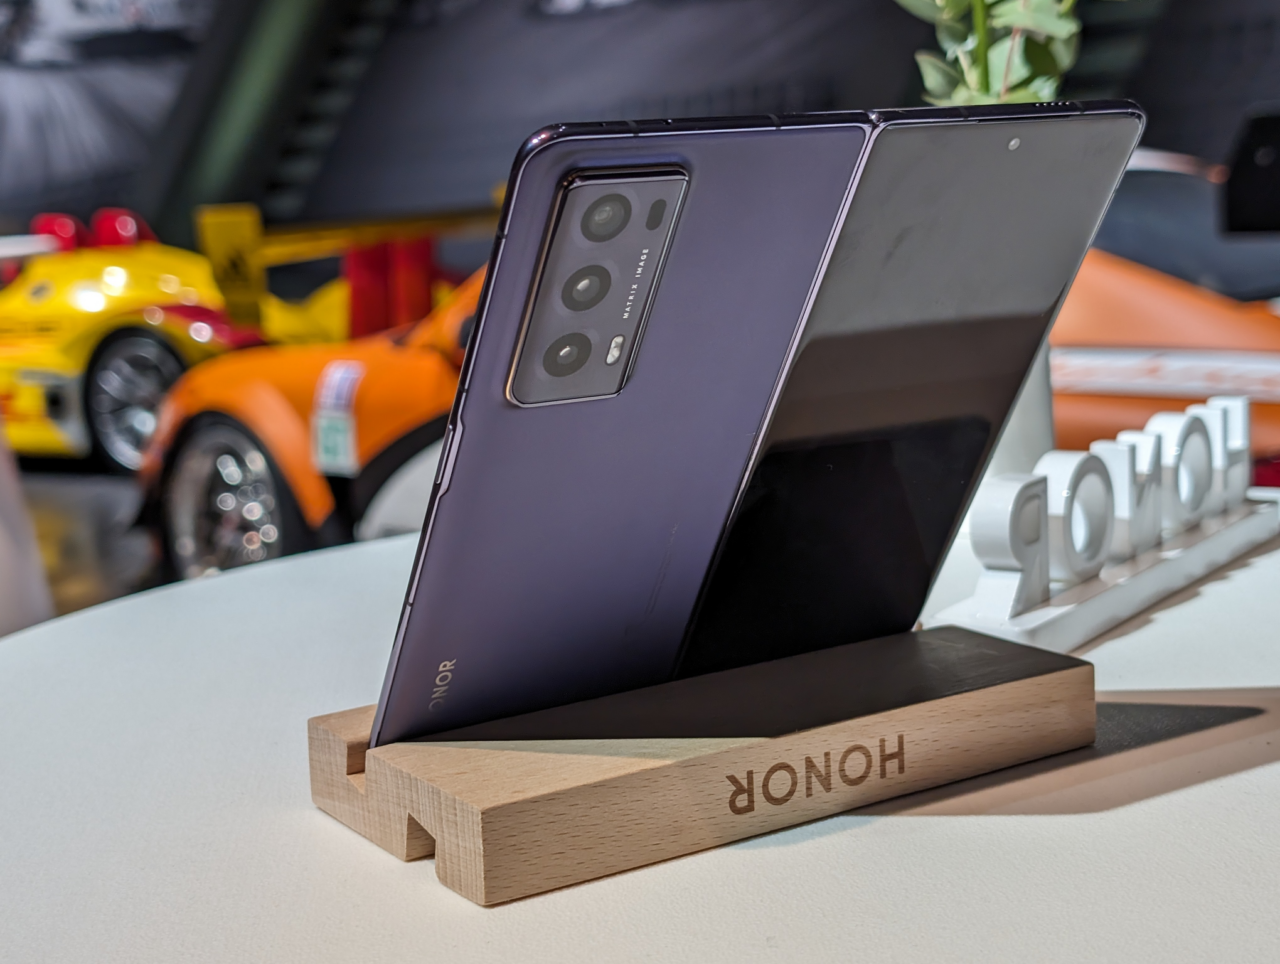 Składany smartfon marki Honor umieszczony na drewnianym stojaku z napisem Honor, z rozmytym tłem przedstawiającym kolorowy samochód wyścigowy.